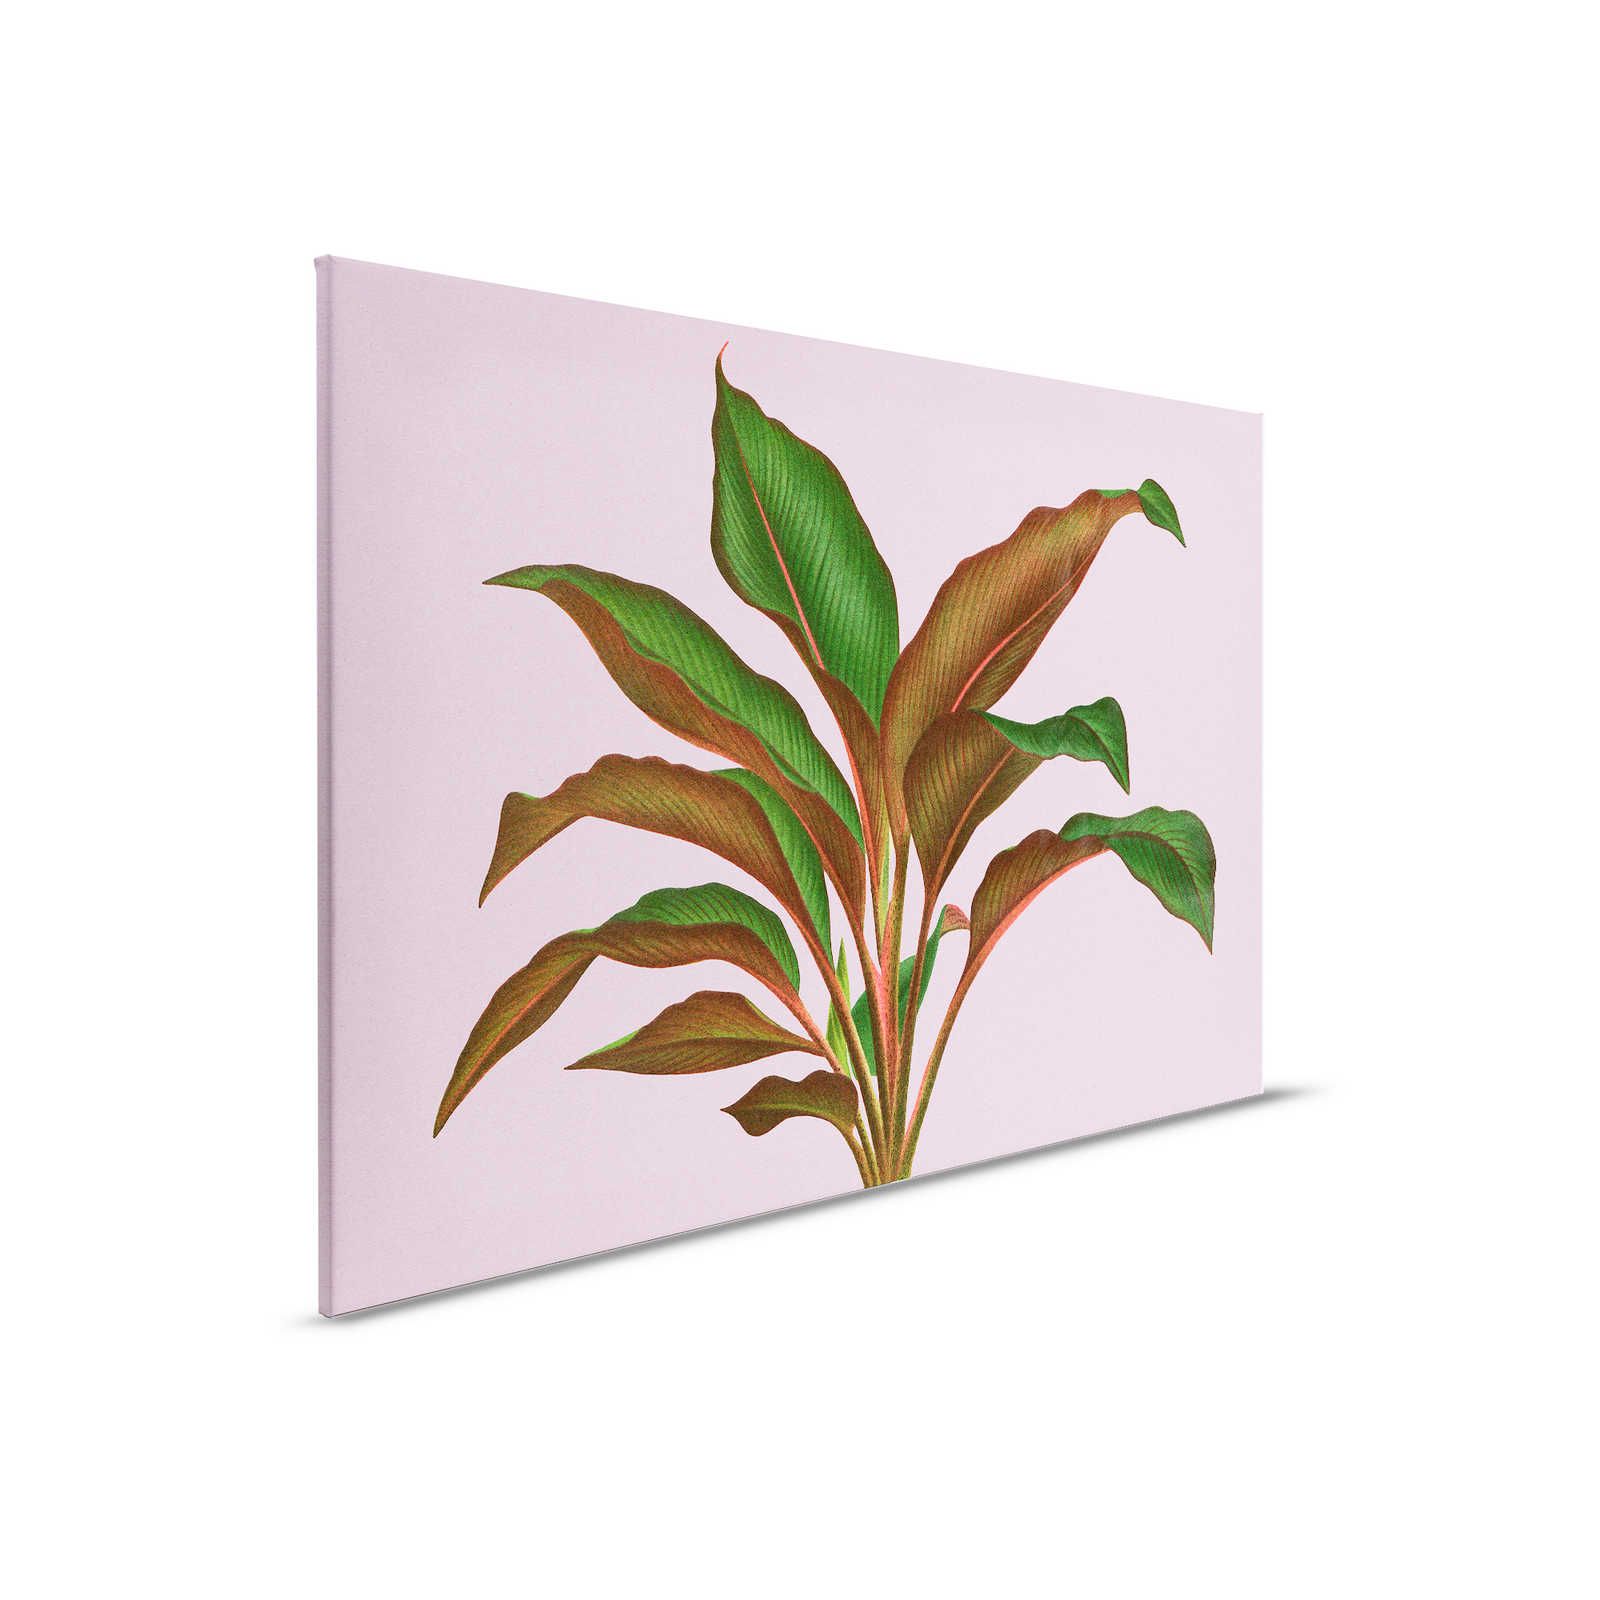 Leaf Garden 3 - Quadro su tela con foglie Rosa con foglia di felce tropicale - 0,90 m x 0,60 m
